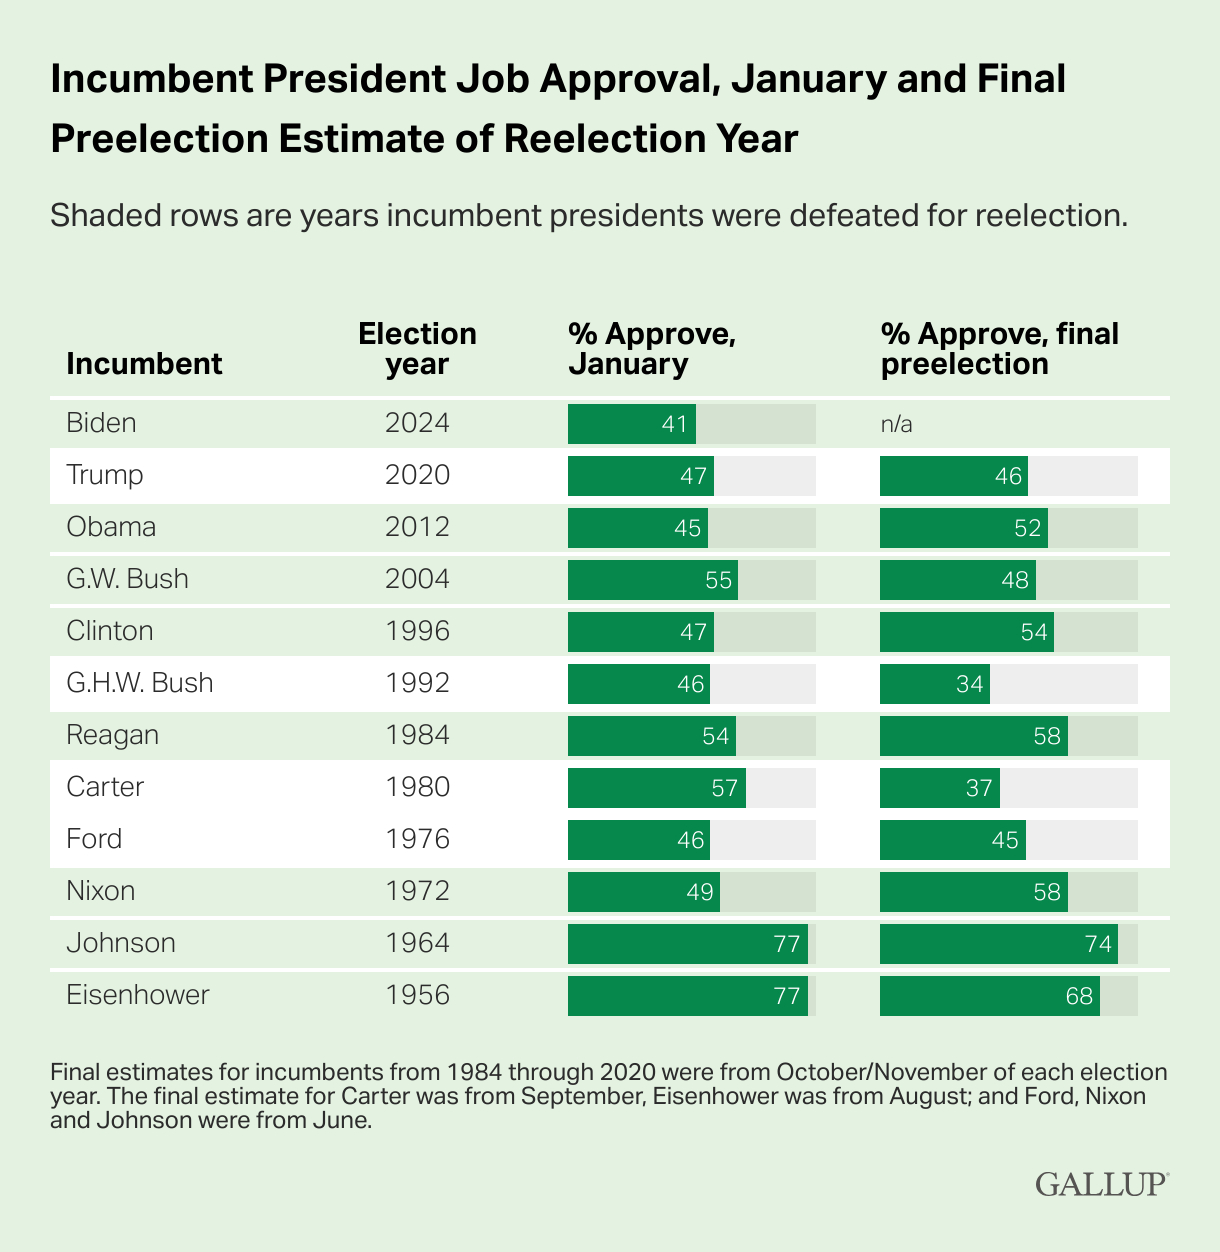 Aprobación del puesto del presidente en ejercicio en enero y estimación final previa a la elección del año de reelección